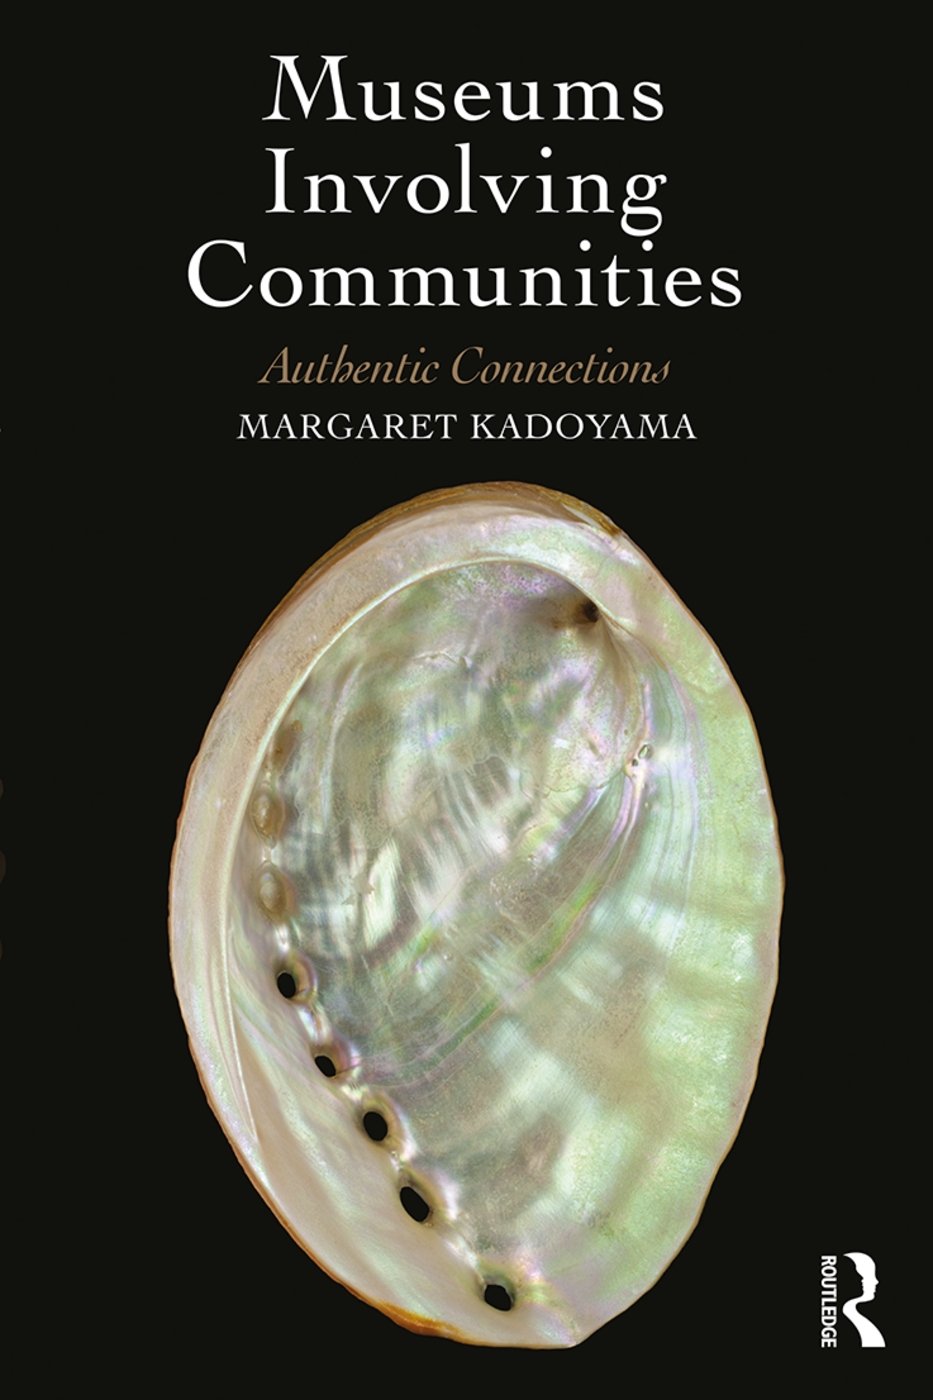 Margaret Kadoyama